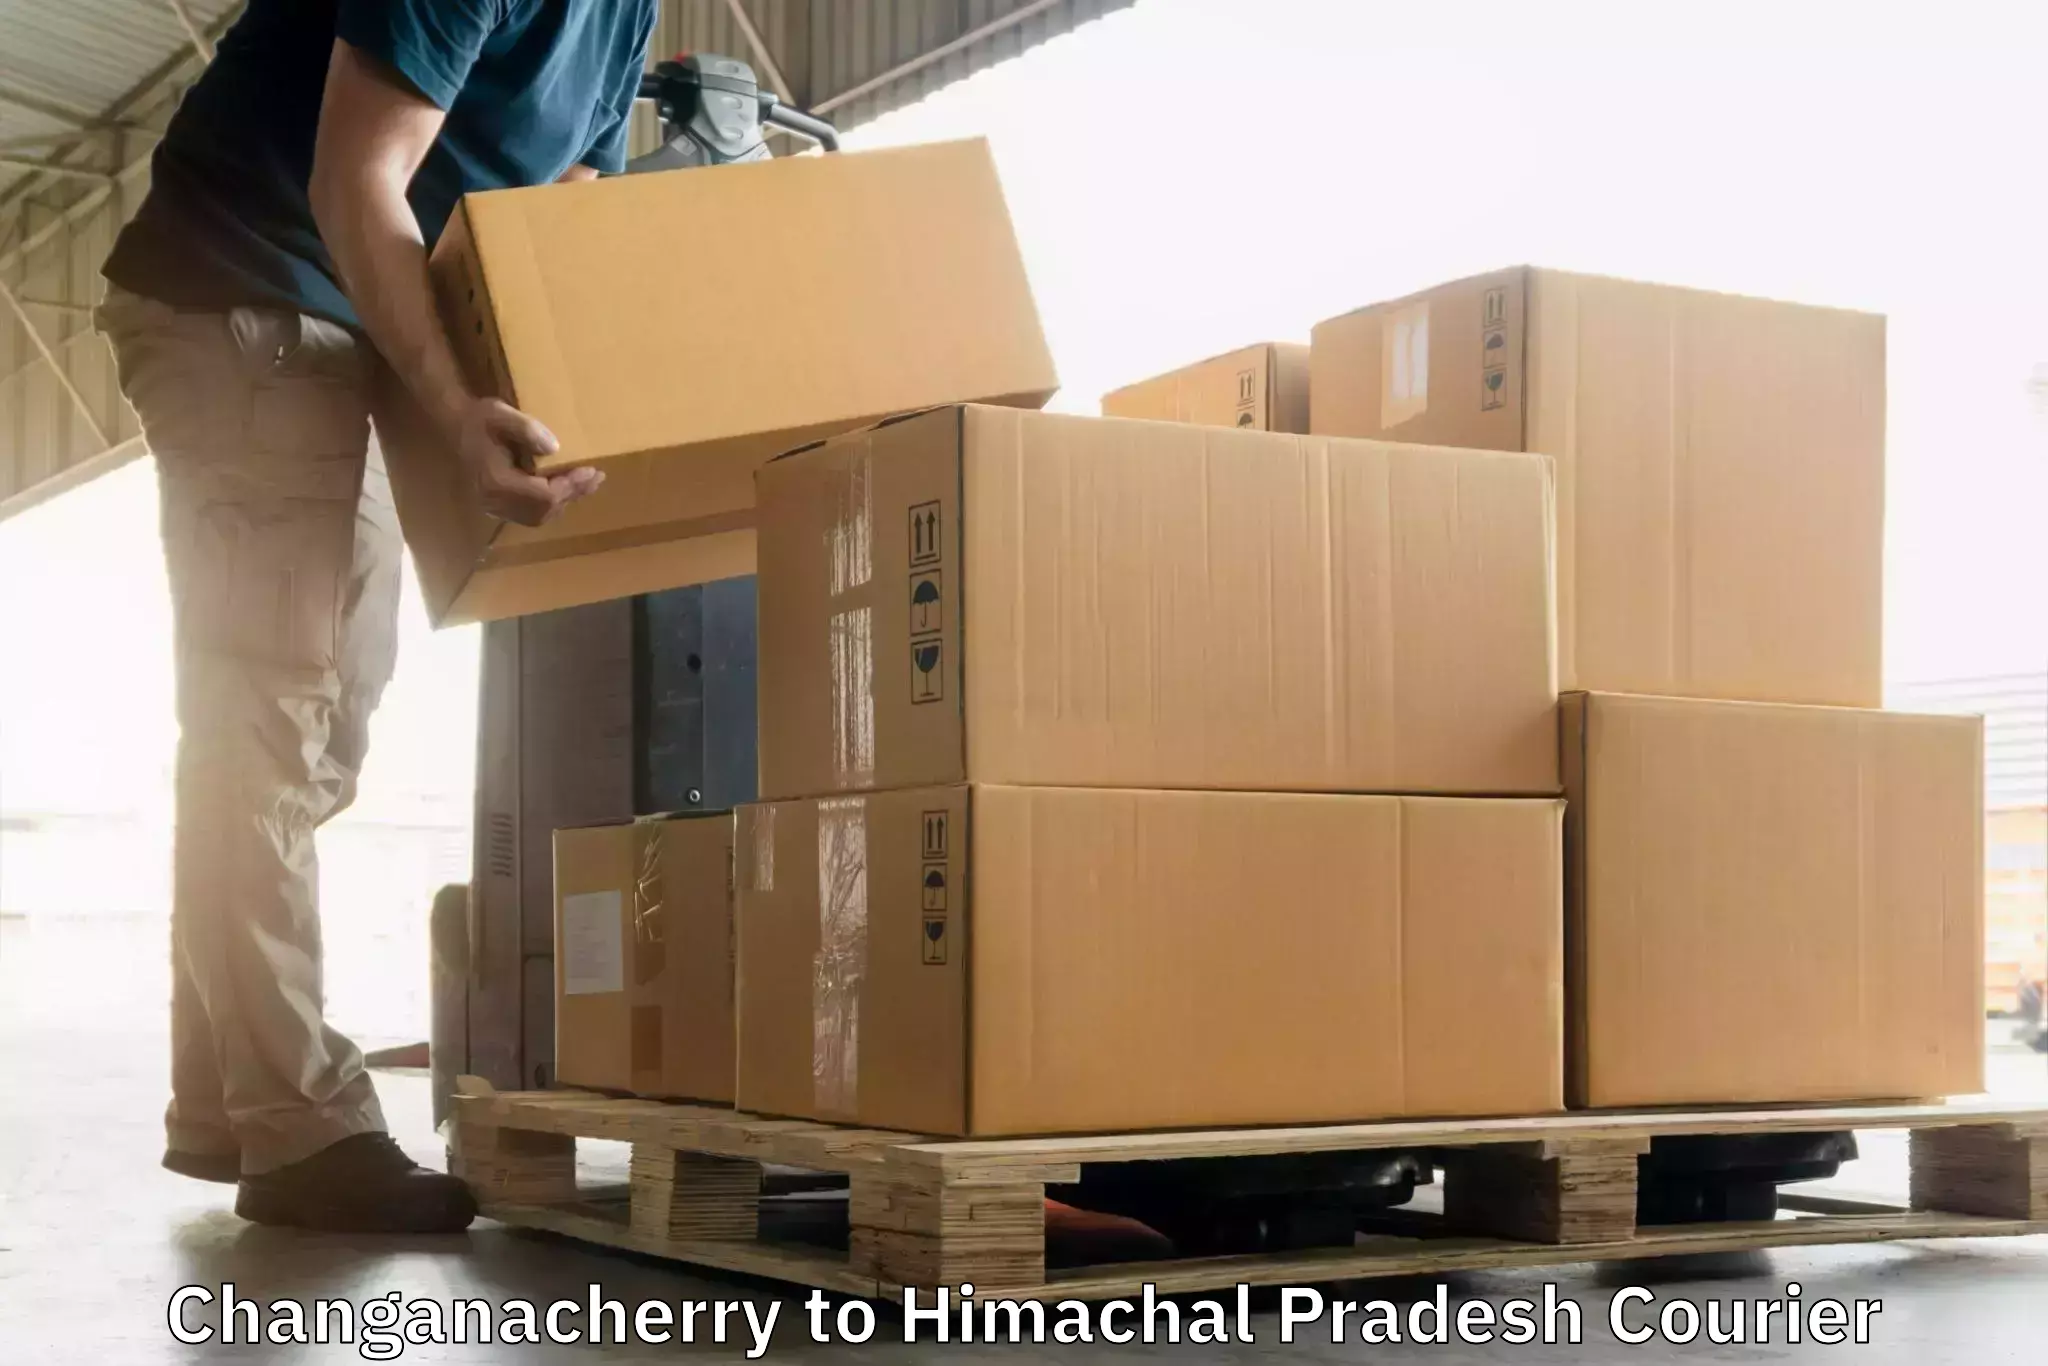 Express logistics providers Changanacherry to Kullu